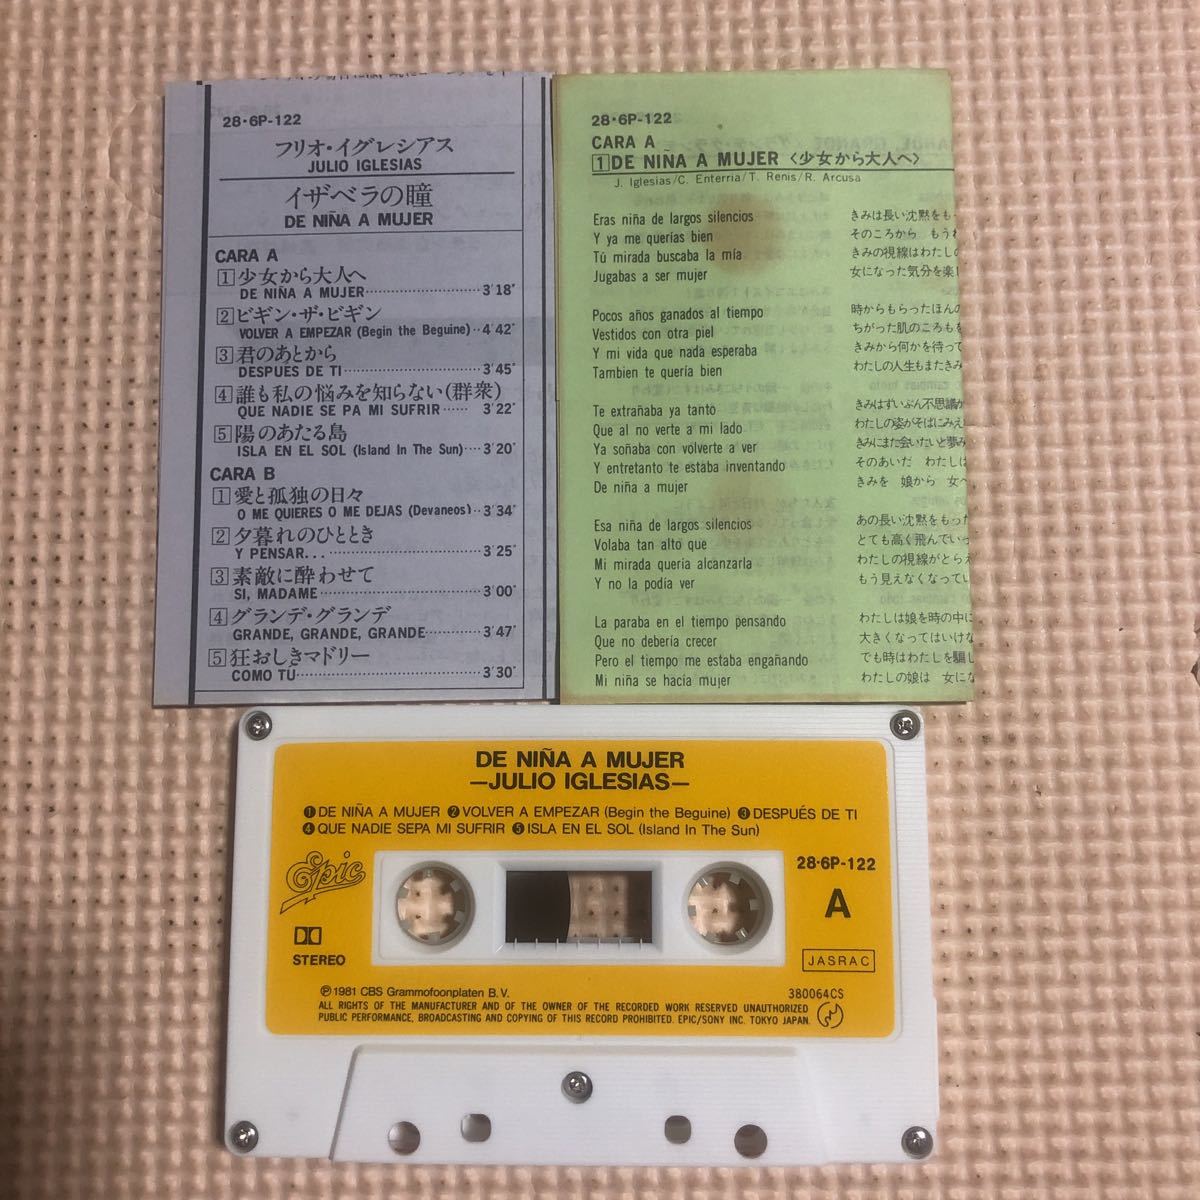 f rio *i gray sia acid The bela. . domestic record cassette tape ###